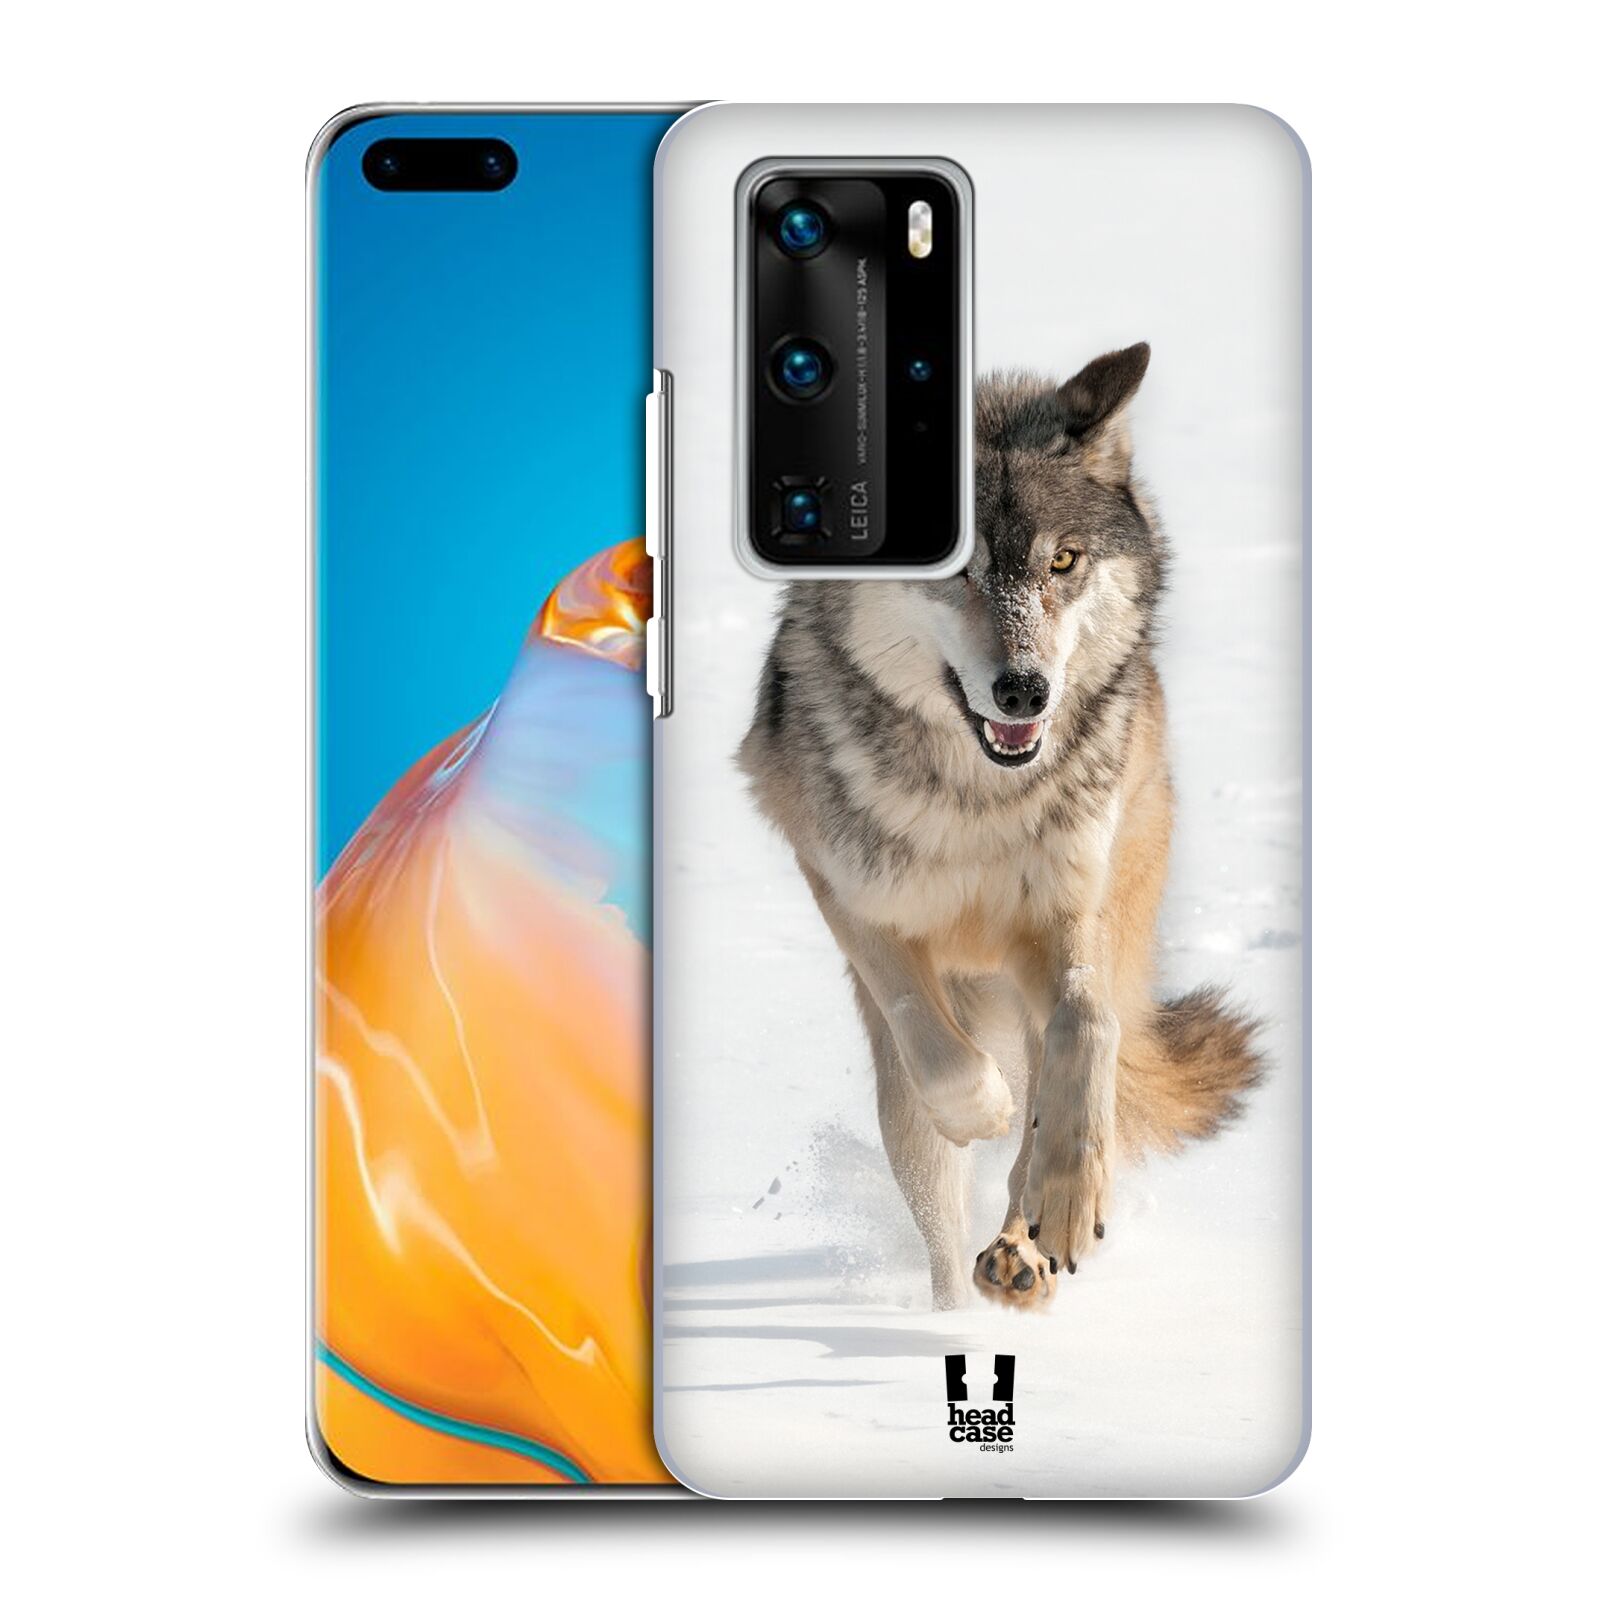 Zadní obal pro mobil Huawei P40 PRO / P40 PRO PLUS - HEAD CASE - Svět zvířat divoký vlk